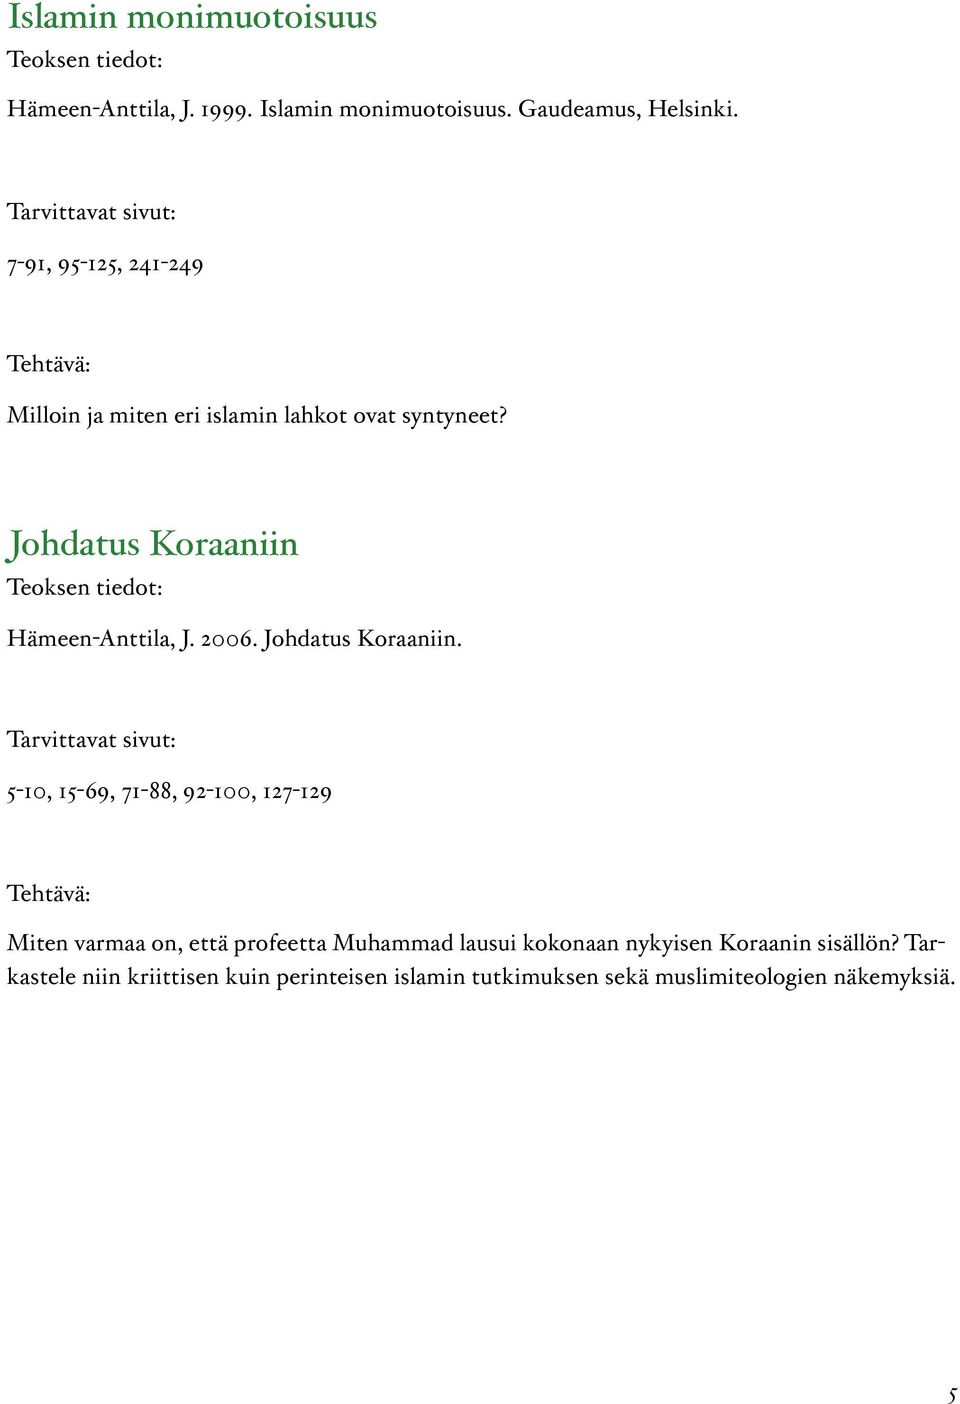 Johdatus Koraaniin Hämeen-Anttila, J. 2006. Johdatus Koraaniin.